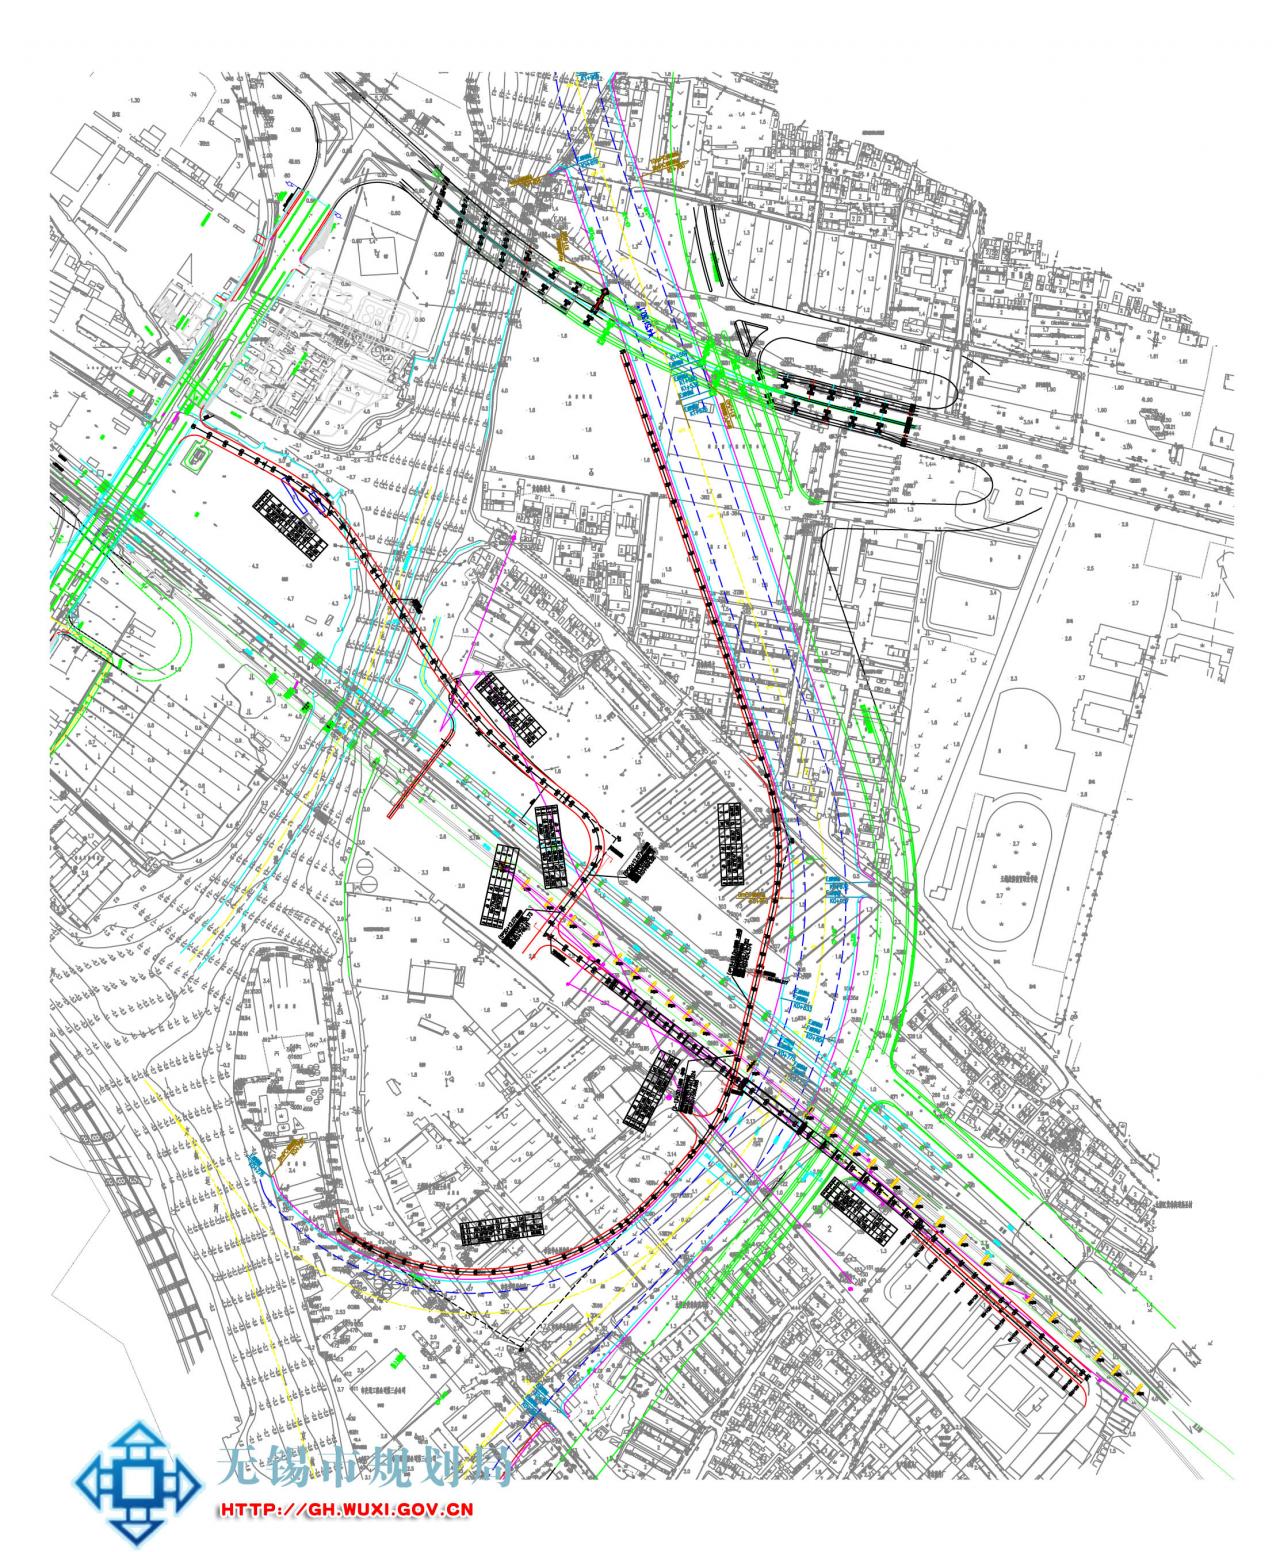 锡澄运河无锡市区段孤岛交通工程项目方案审查批前公示